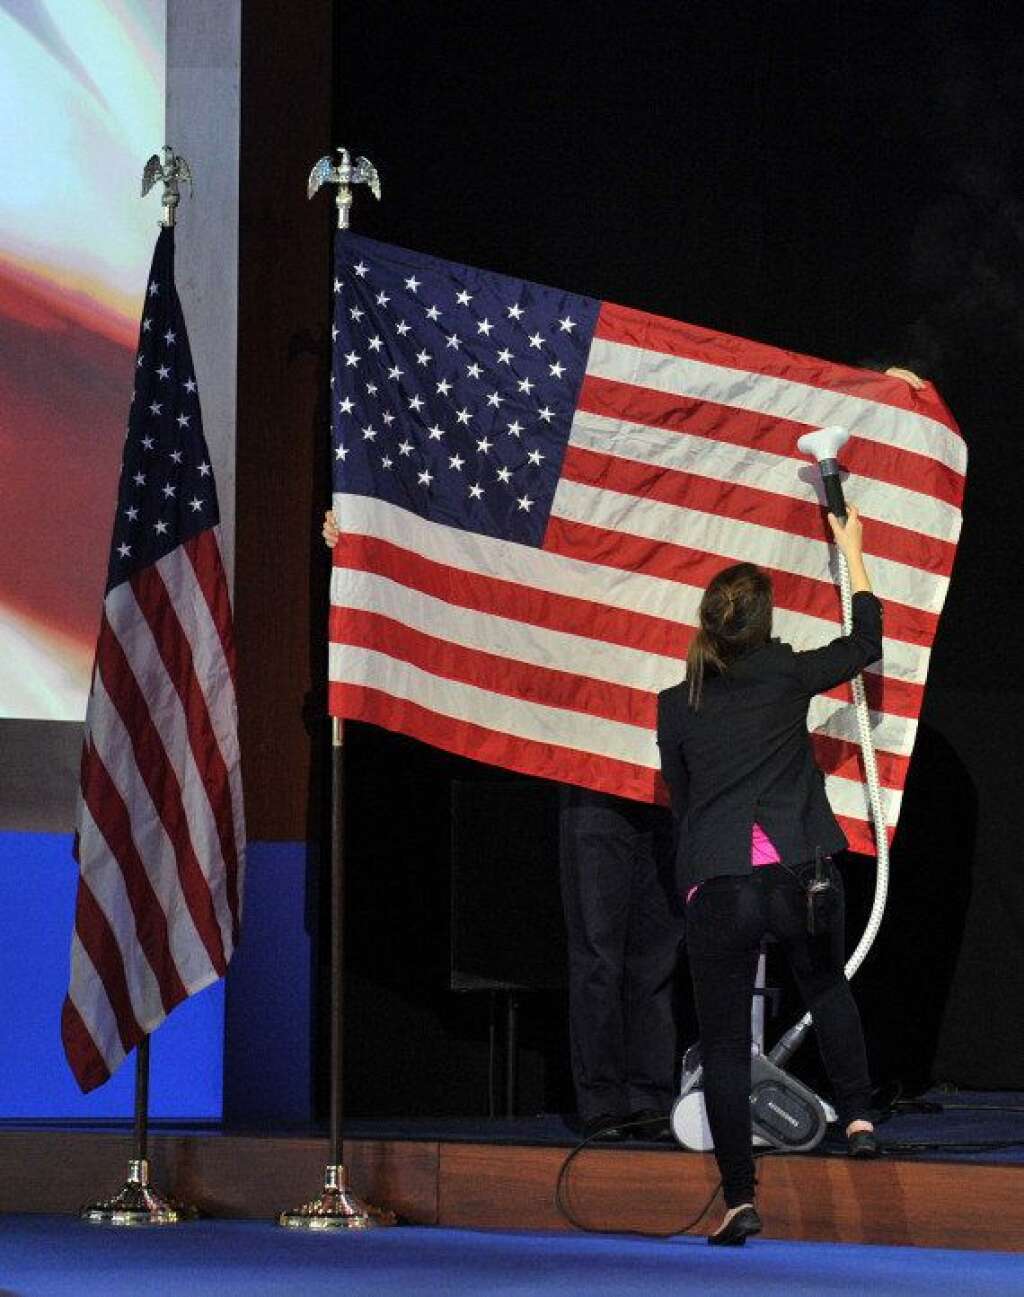 La photo des coulisses : l'aspirateur de Romney - Au Convention and Exhibition Center de Boston, l'heure est aux derniers préparatifs avant l'arrivée du candidat républicain, Mitt Romney, qui y tiendra sa soirée électorale.